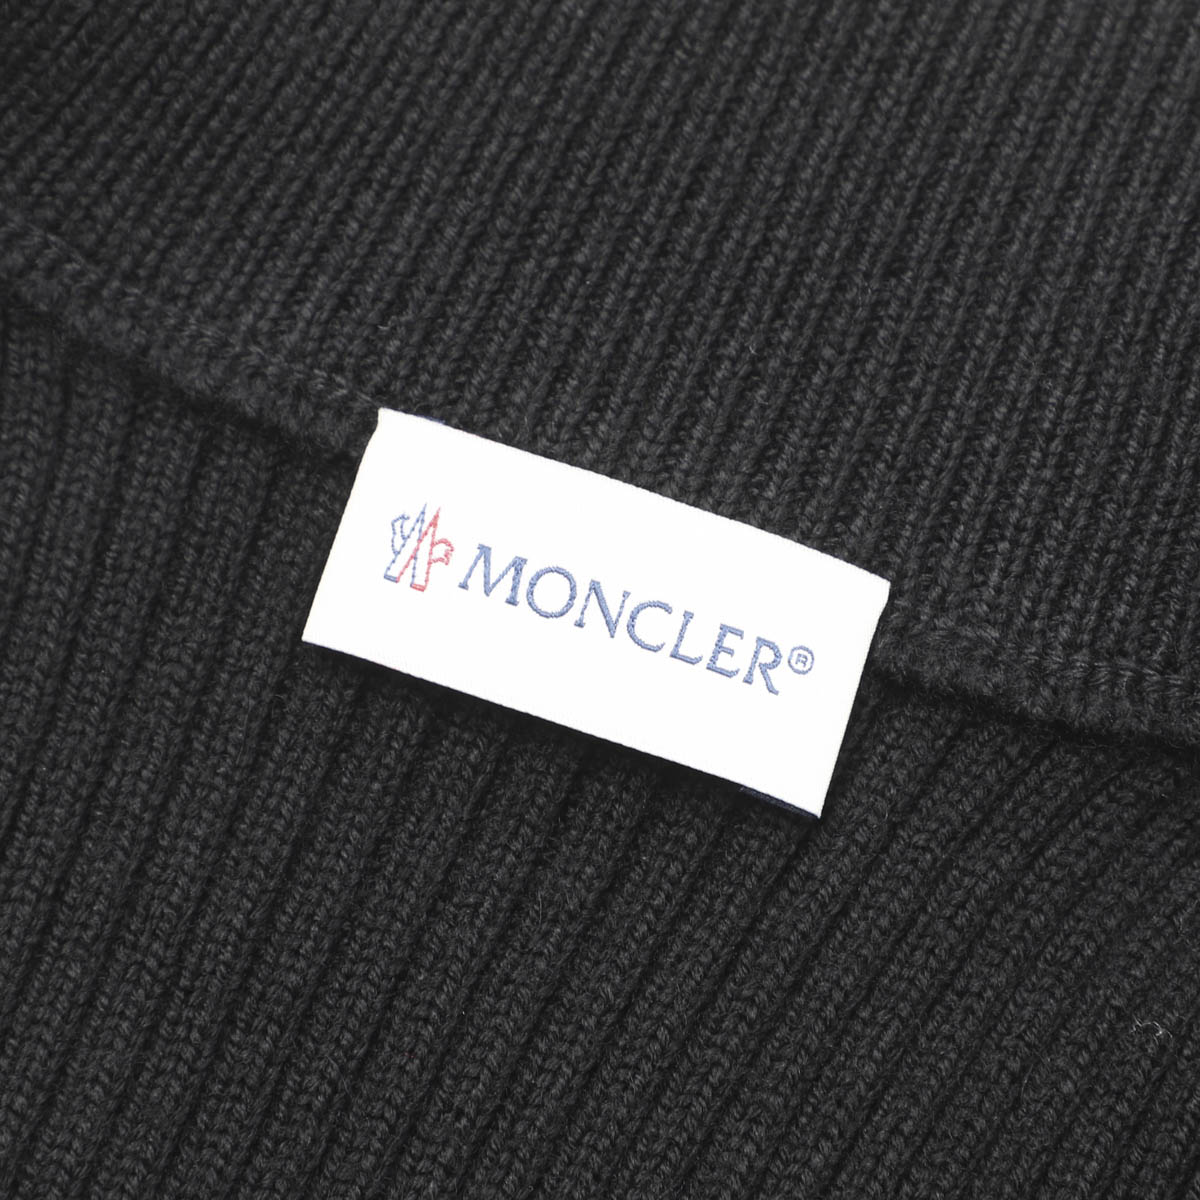  Moncler MONCLER Zip выше вязаный кардиган черный 9b00008-m1131-999